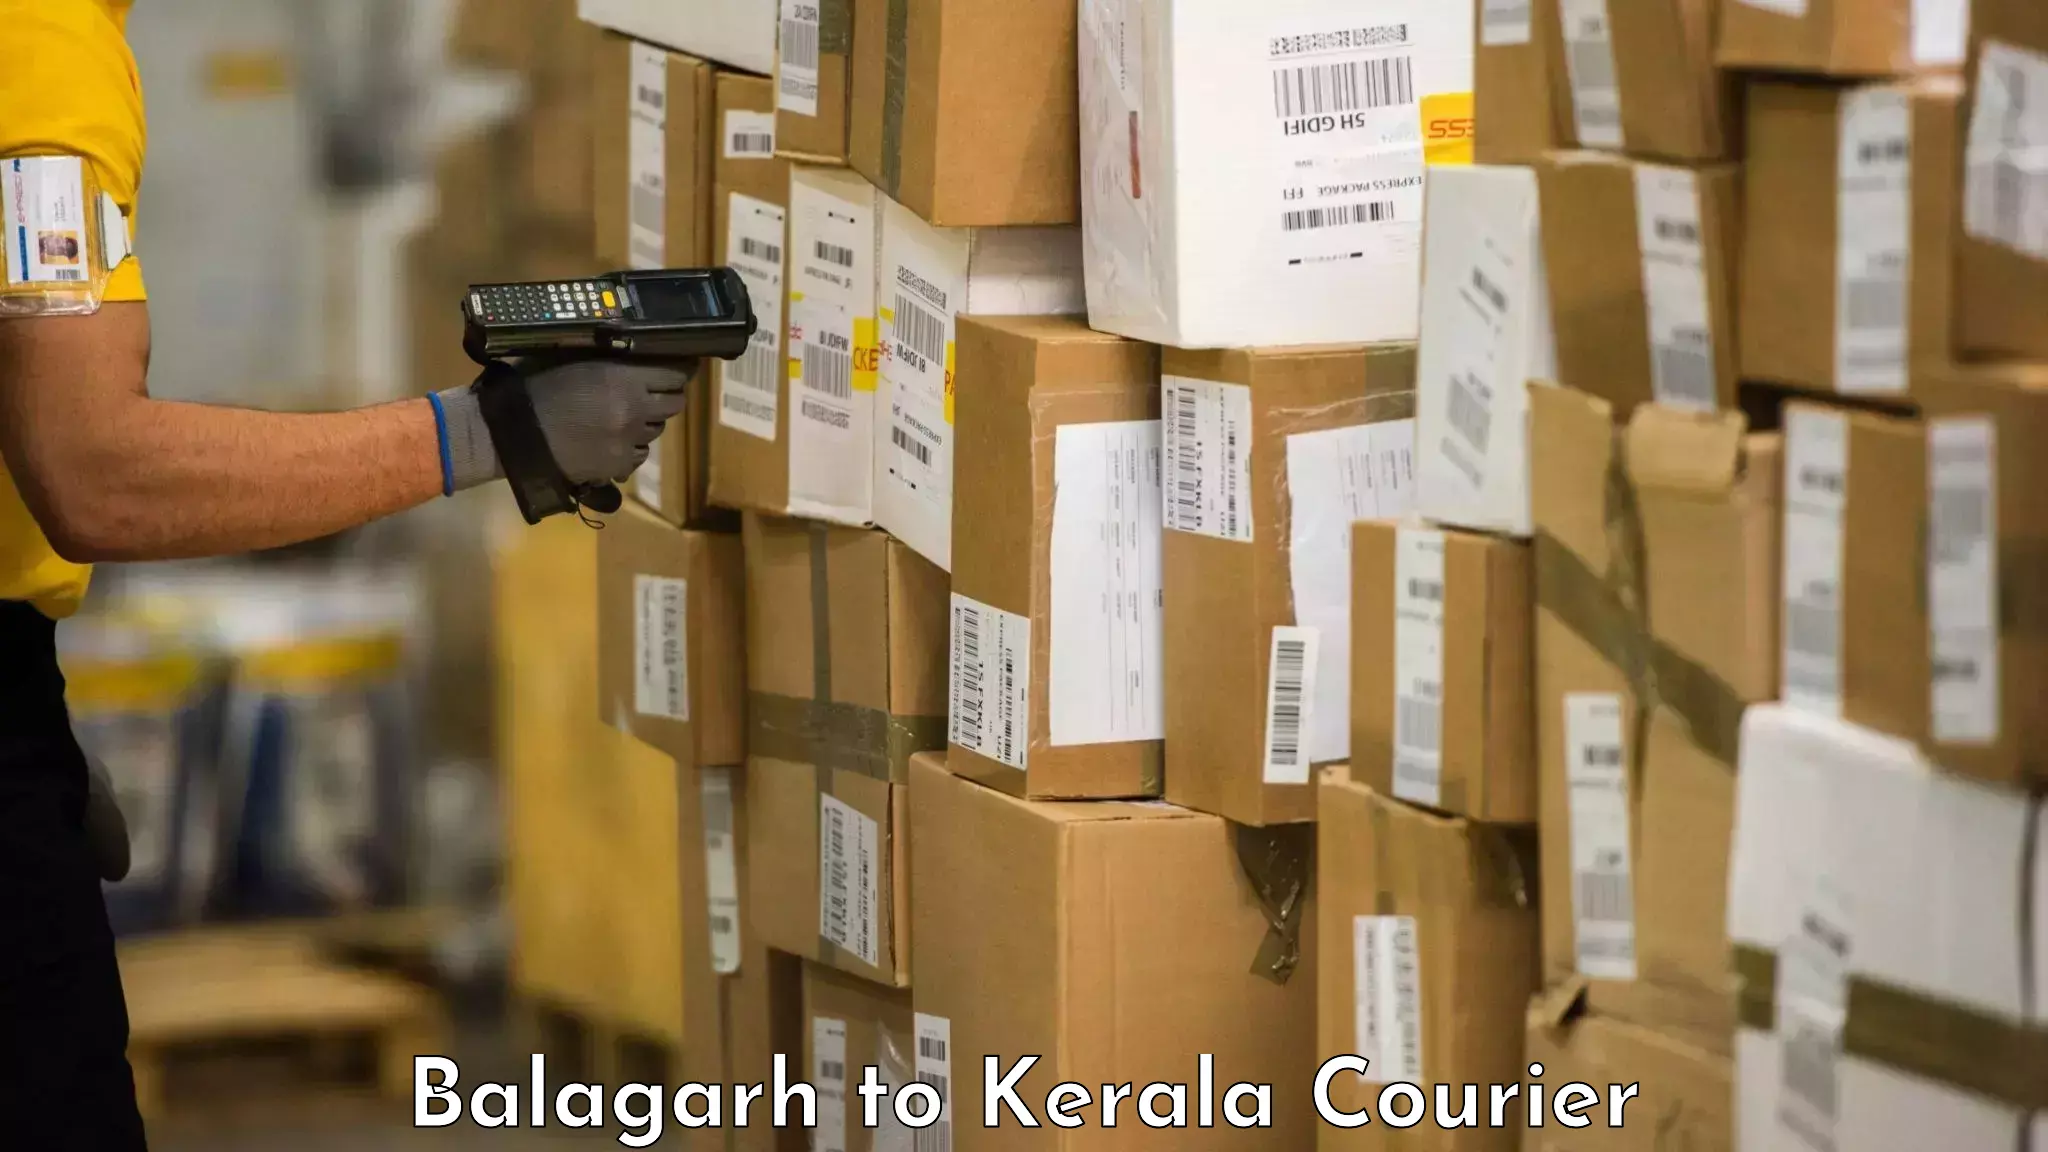 Luggage transport company Balagarh to Vaikom